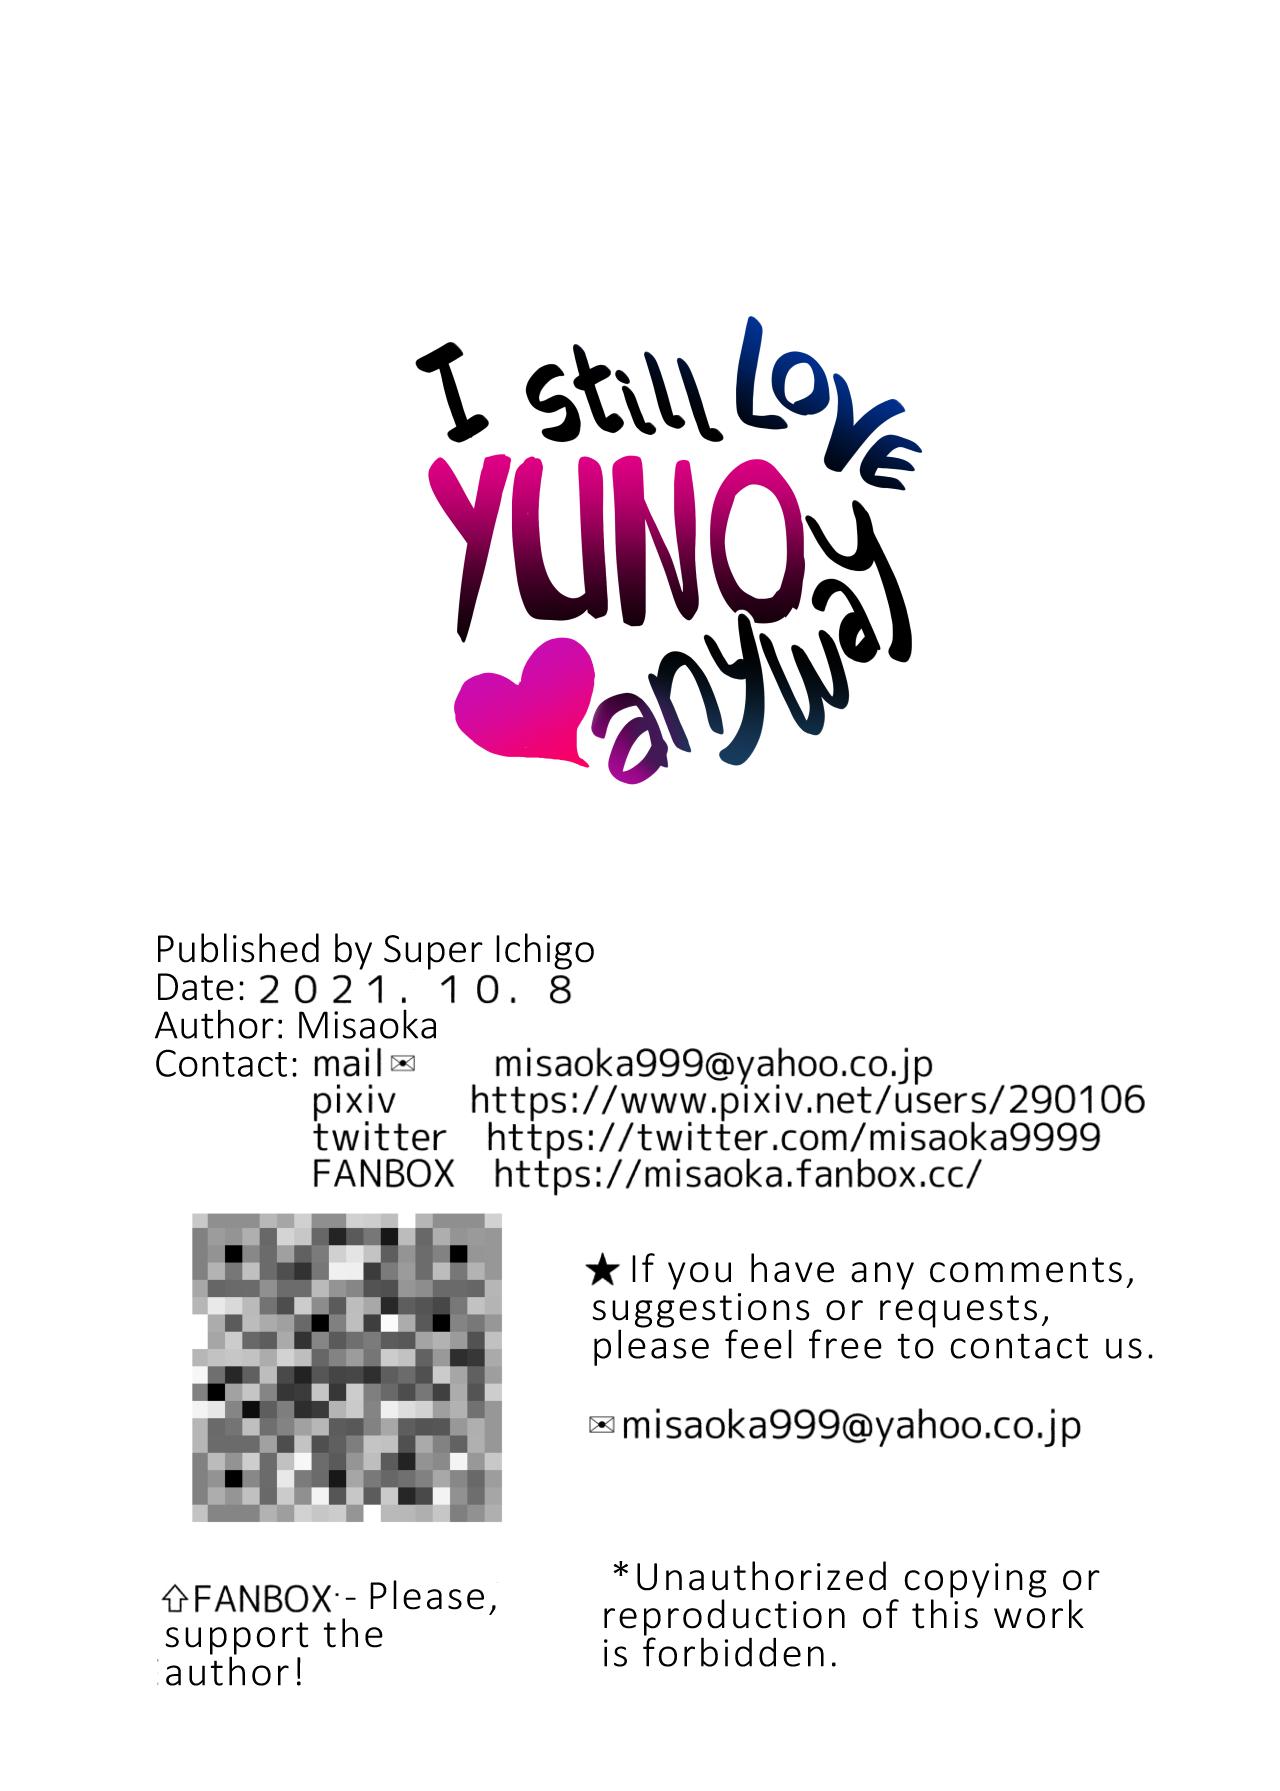 Soredemo Boku wa Yuno ga Suki - I Still Love Yuno Anyway 100